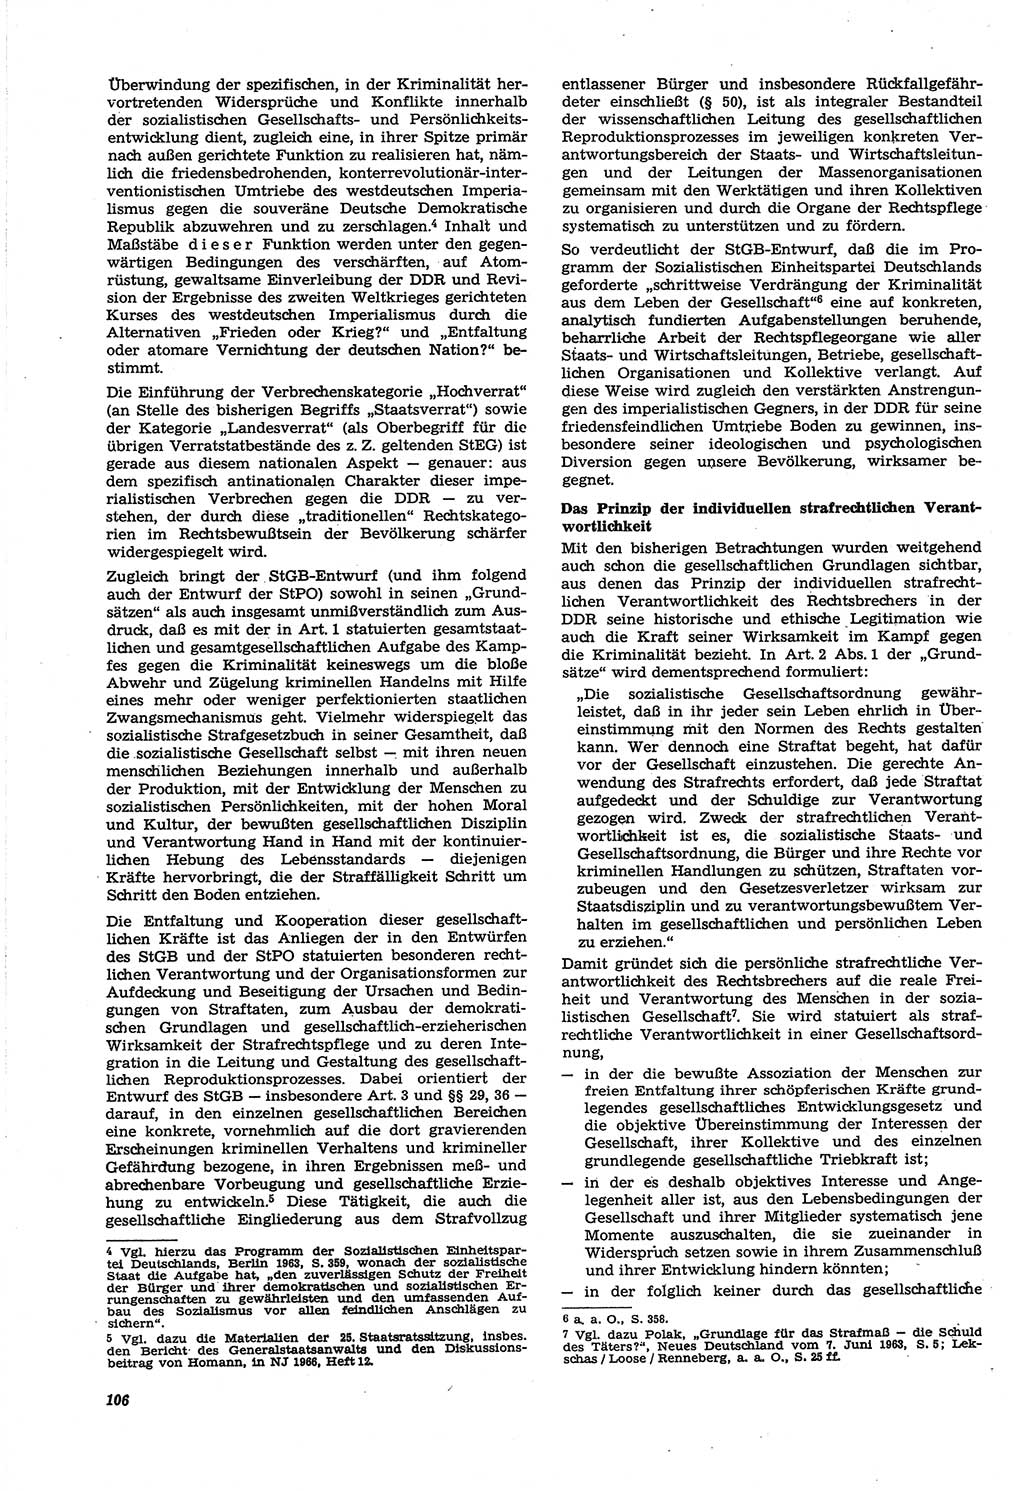 Neue Justiz (NJ), Zeitschrift für Recht und Rechtswissenschaft [Deutsche Demokratische Republik (DDR)], 21. Jahrgang 1967, Seite 106 (NJ DDR 1967, S. 106)